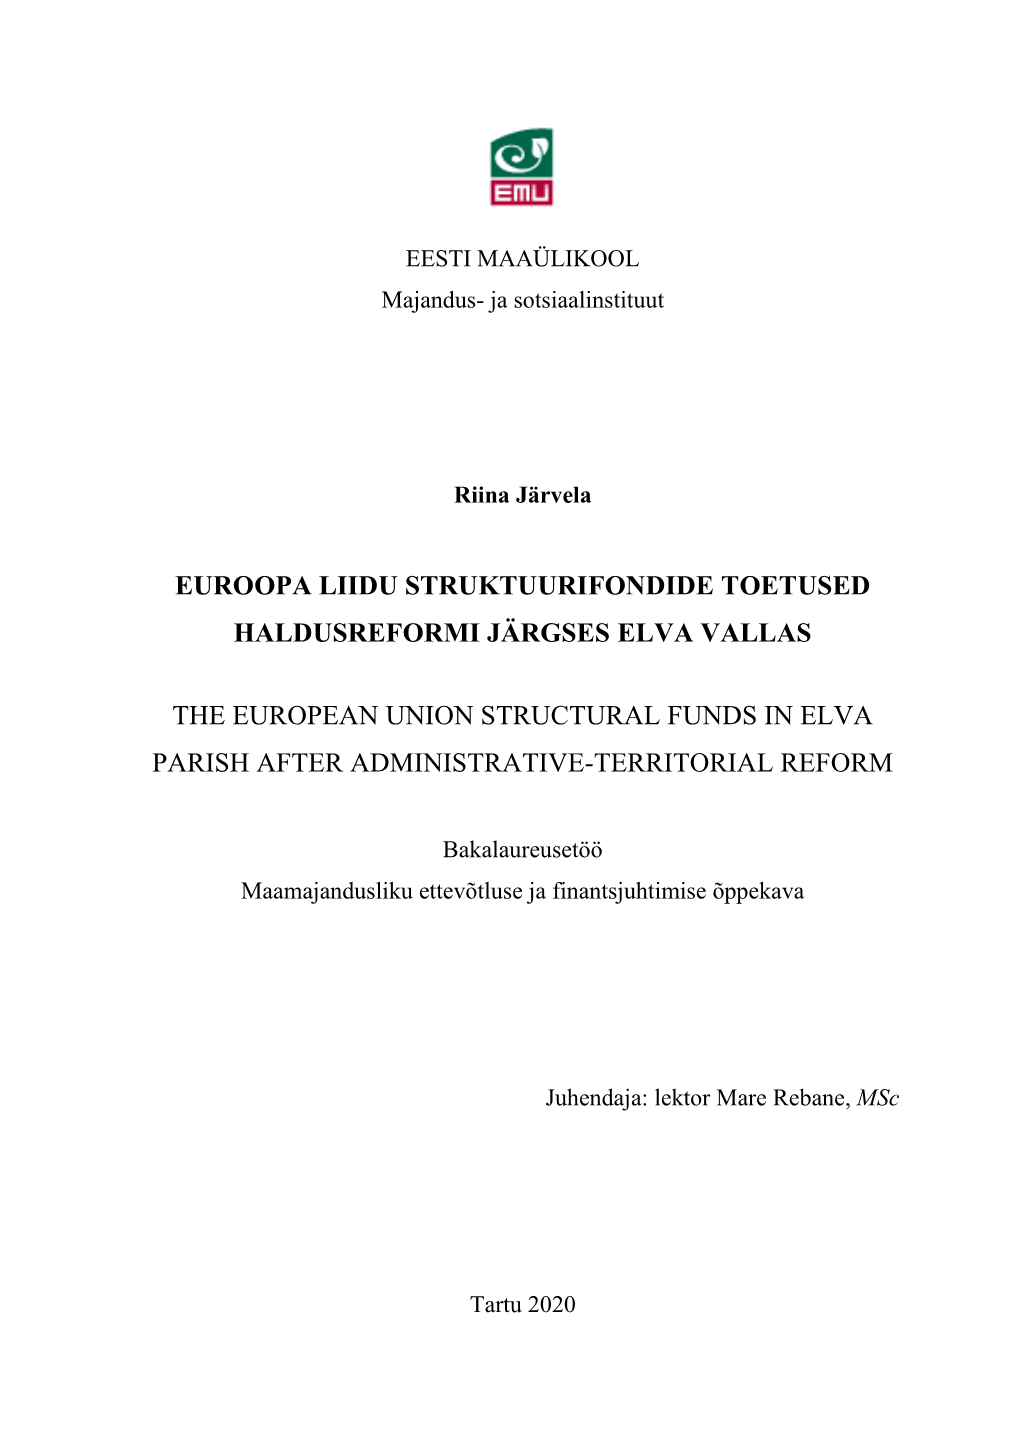 Euroopa Liidu Struktuurifondide Toetused Haldusreformi Järgses Elva Vallas